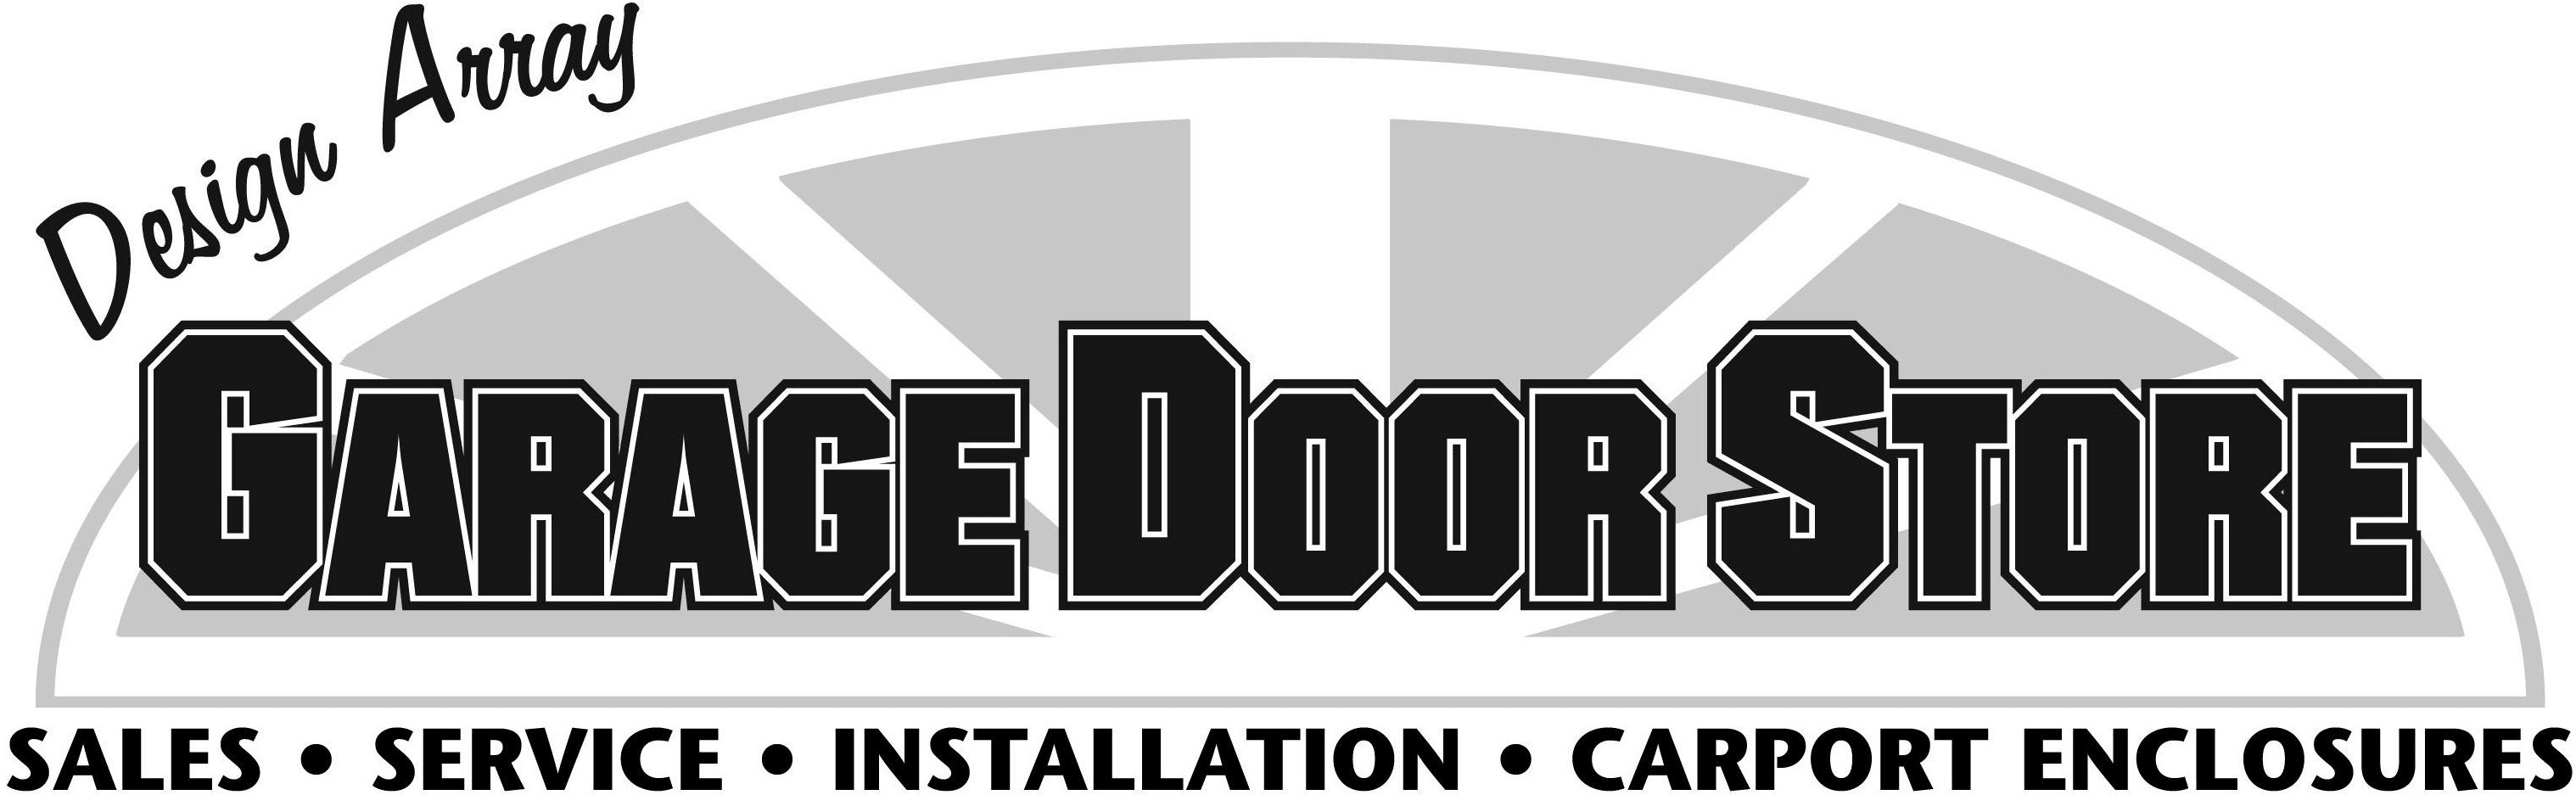 Design Array Garage Door Store - Sales, Service, Installation, Carport Enclosures. Garage Openers, Garage Doors, Service, Springs, Remotes, Garage Door Parts